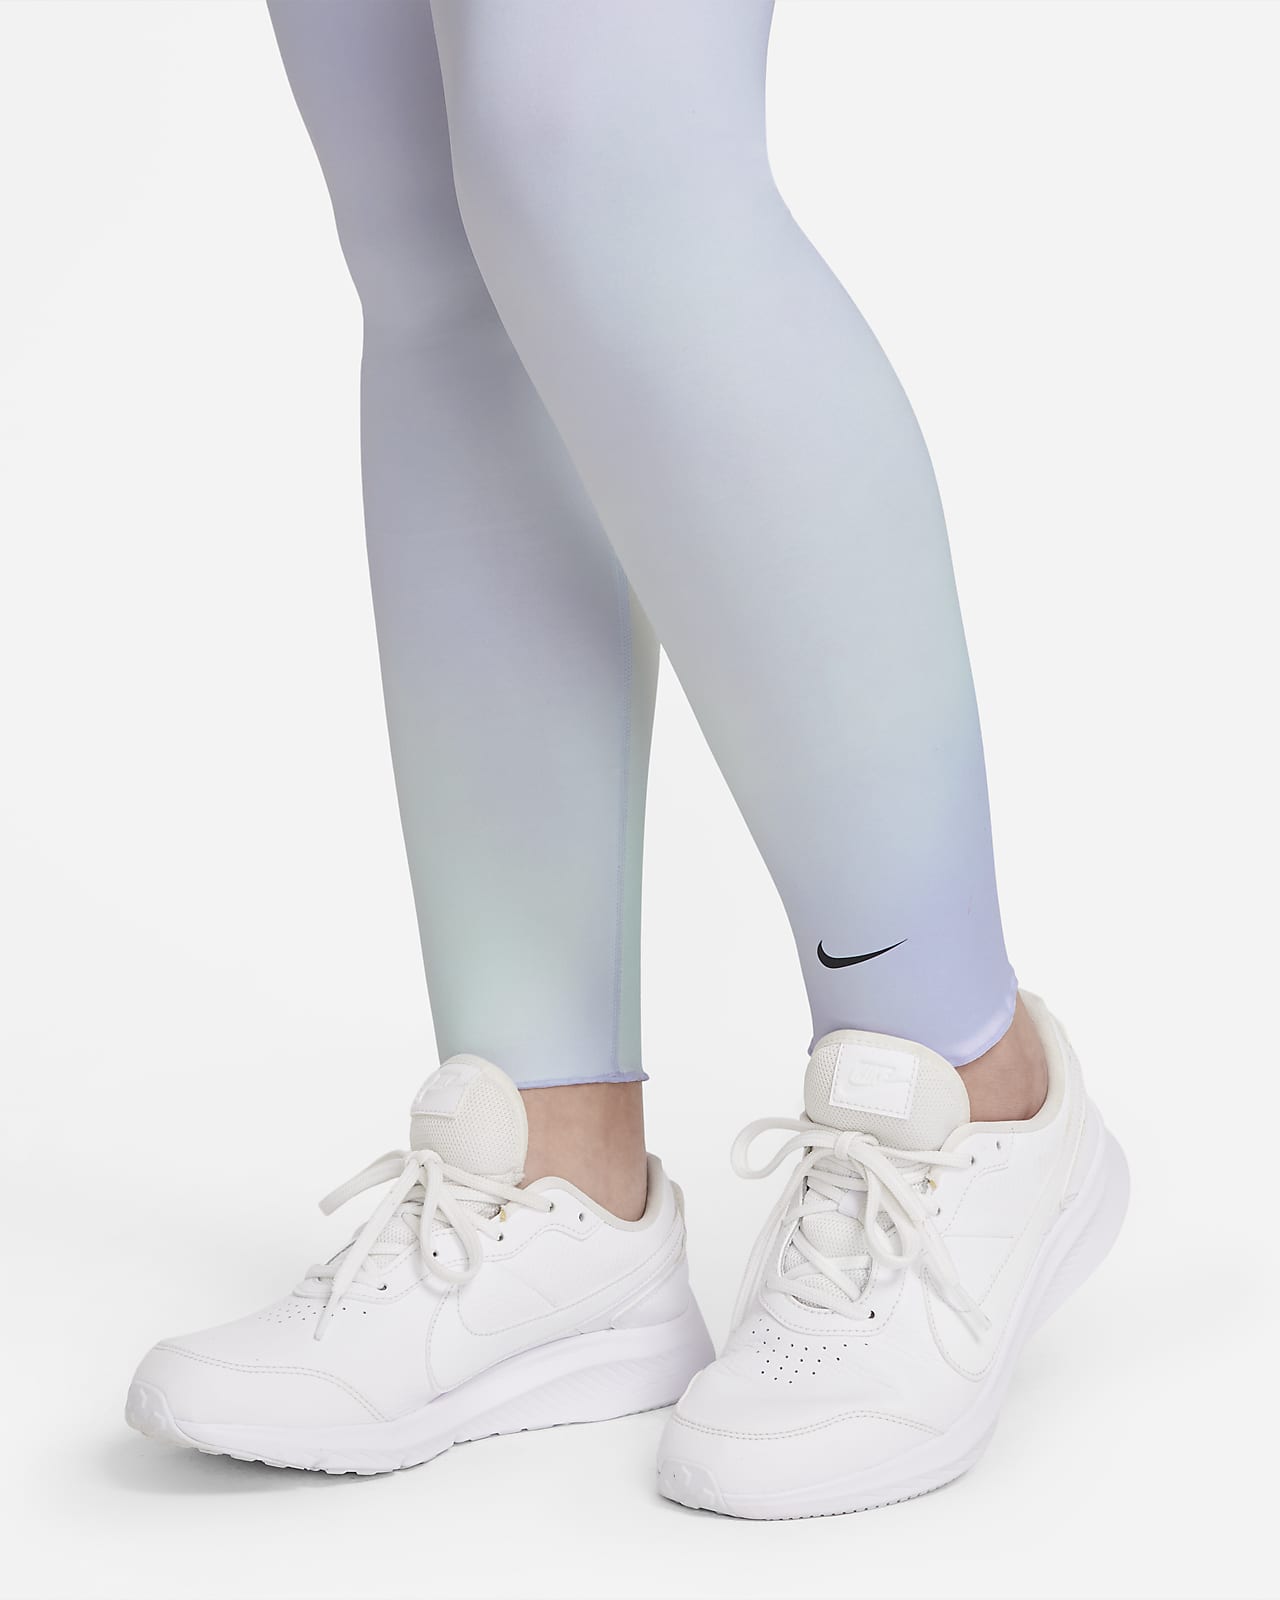 Nike Girls' Fitness Dri-FIT One Tights Junior